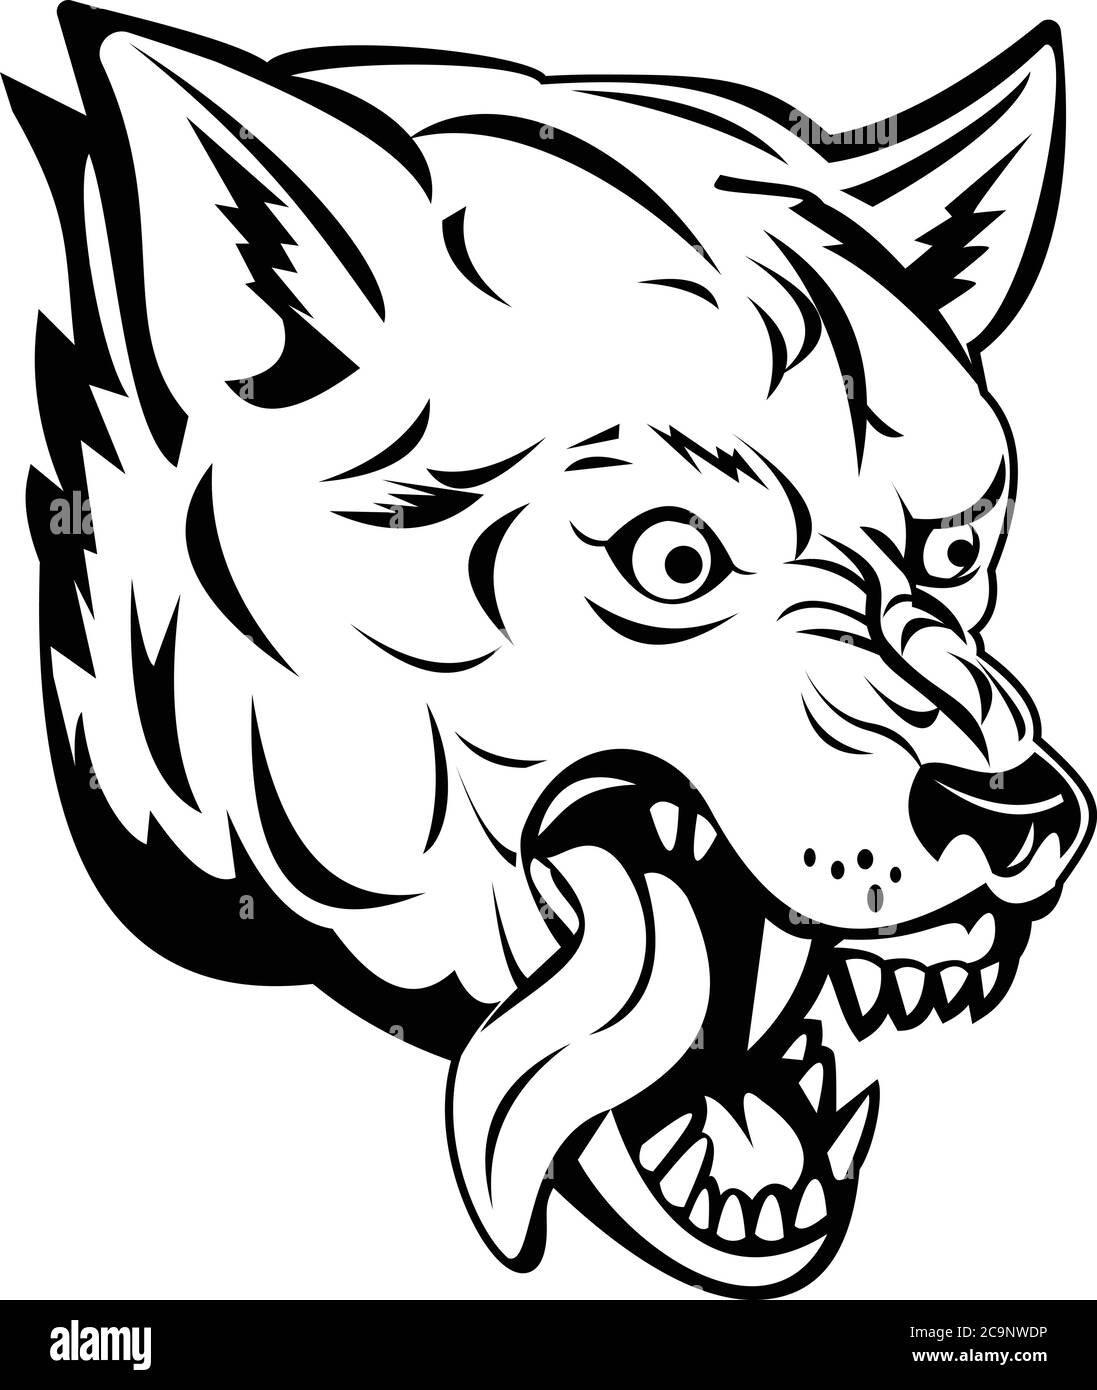 Sport mascotte illustrazione di testa di un lupo aggressivo e arrabbiato, lupo canis, lupo grigio o lupo grigio, un grande canino nativo di Eurasia e del Nord am Illustrazione Vettoriale